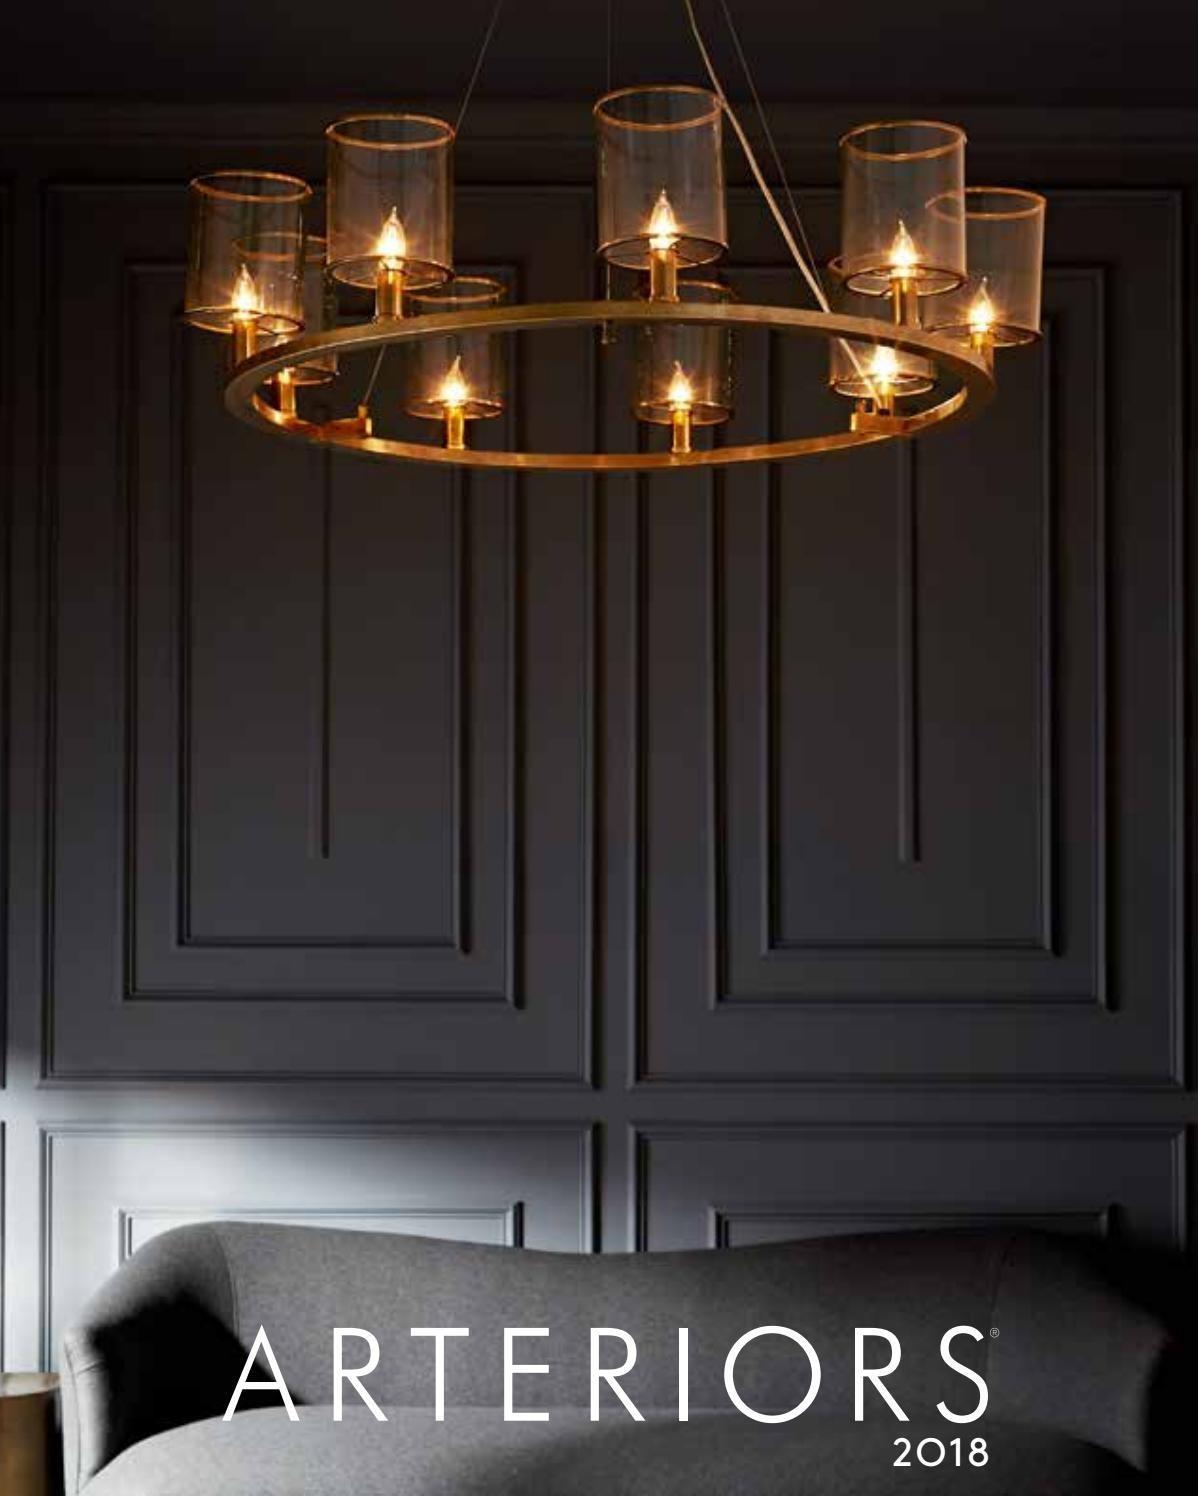 全铜式灯具设计:ARTERIORS 2018年欧美现代灯具设计画册